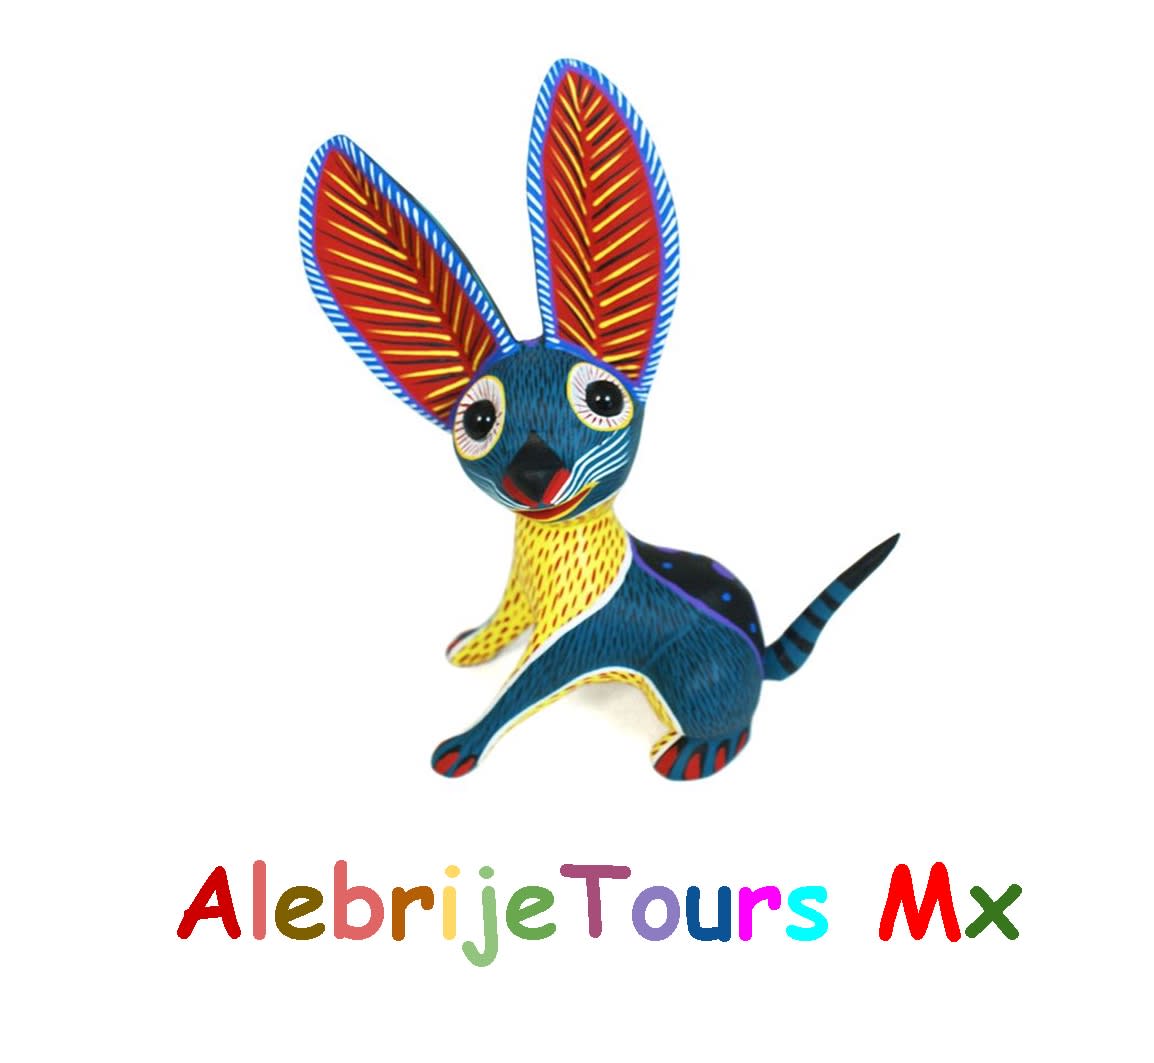 Alebrije Tours